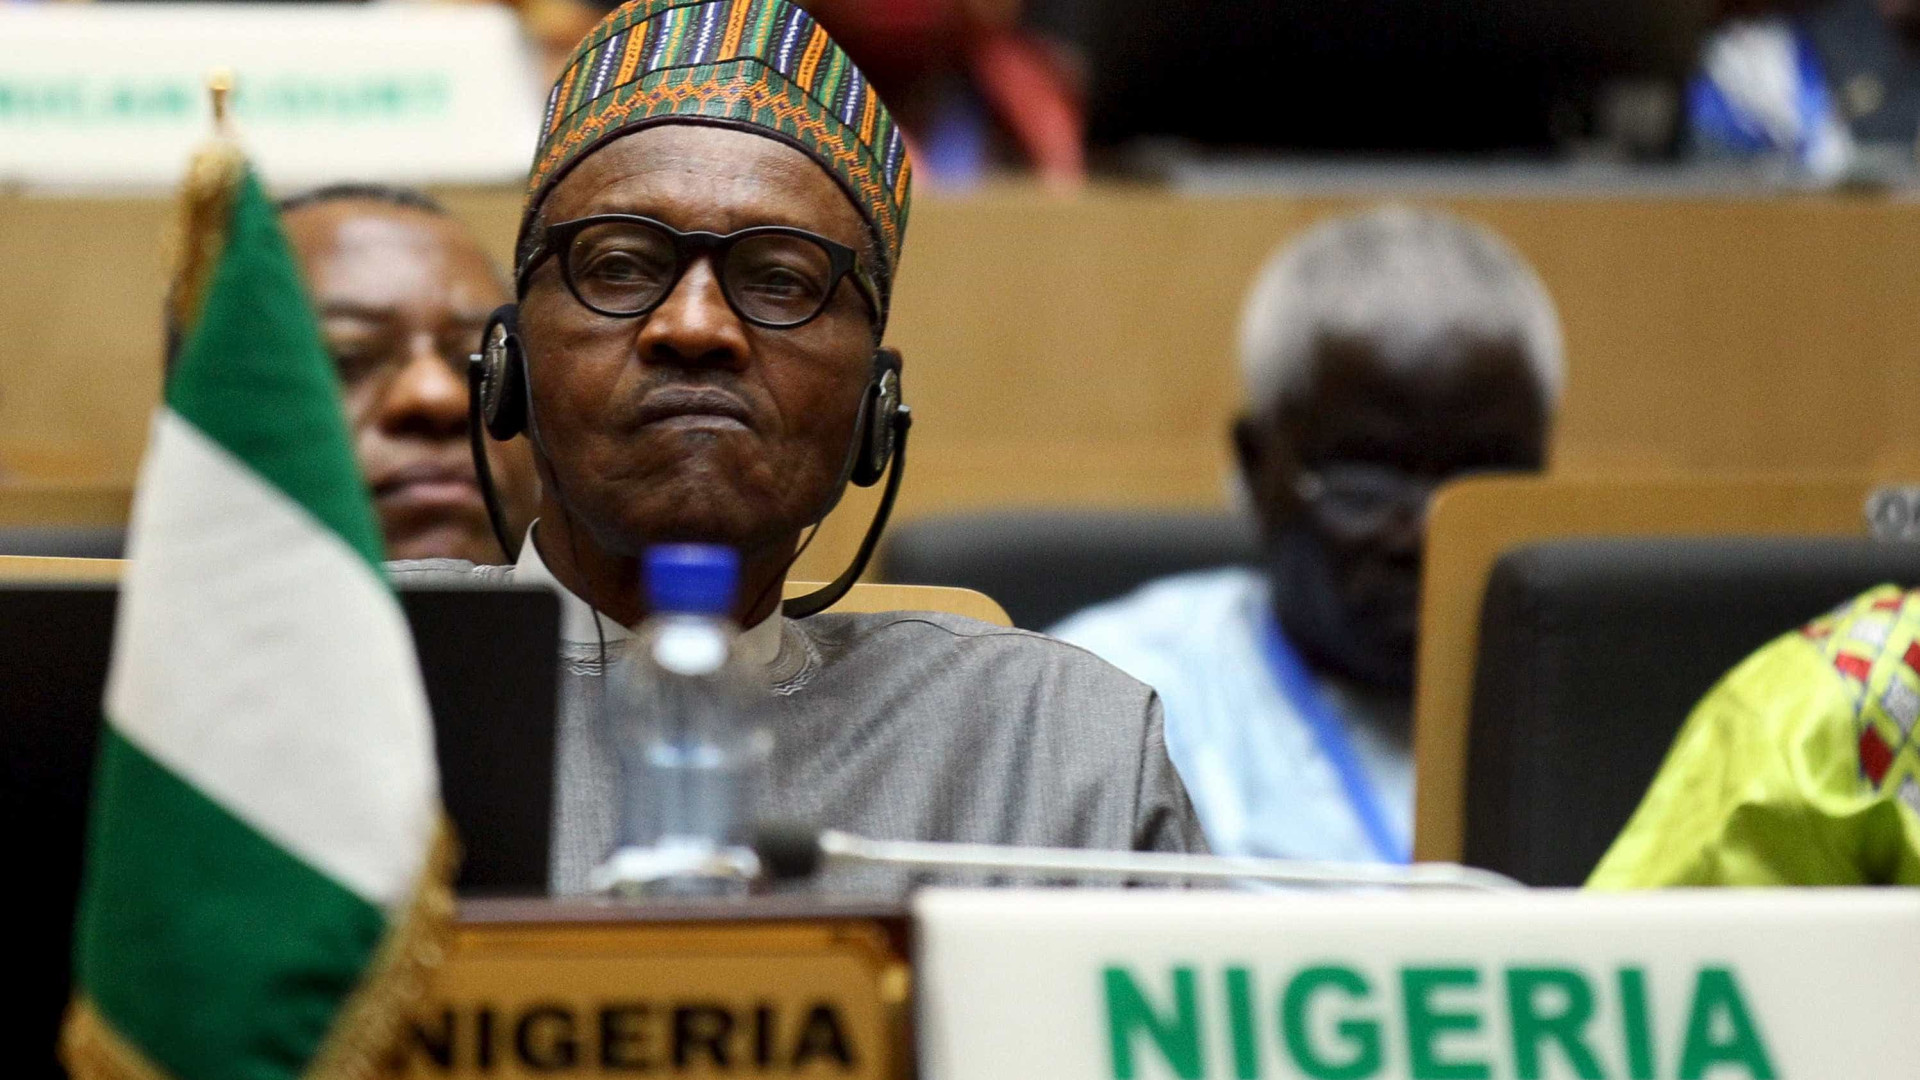 Nigéria pede empréstimo de US$ 3,6 bi após queda no preço do petróleo